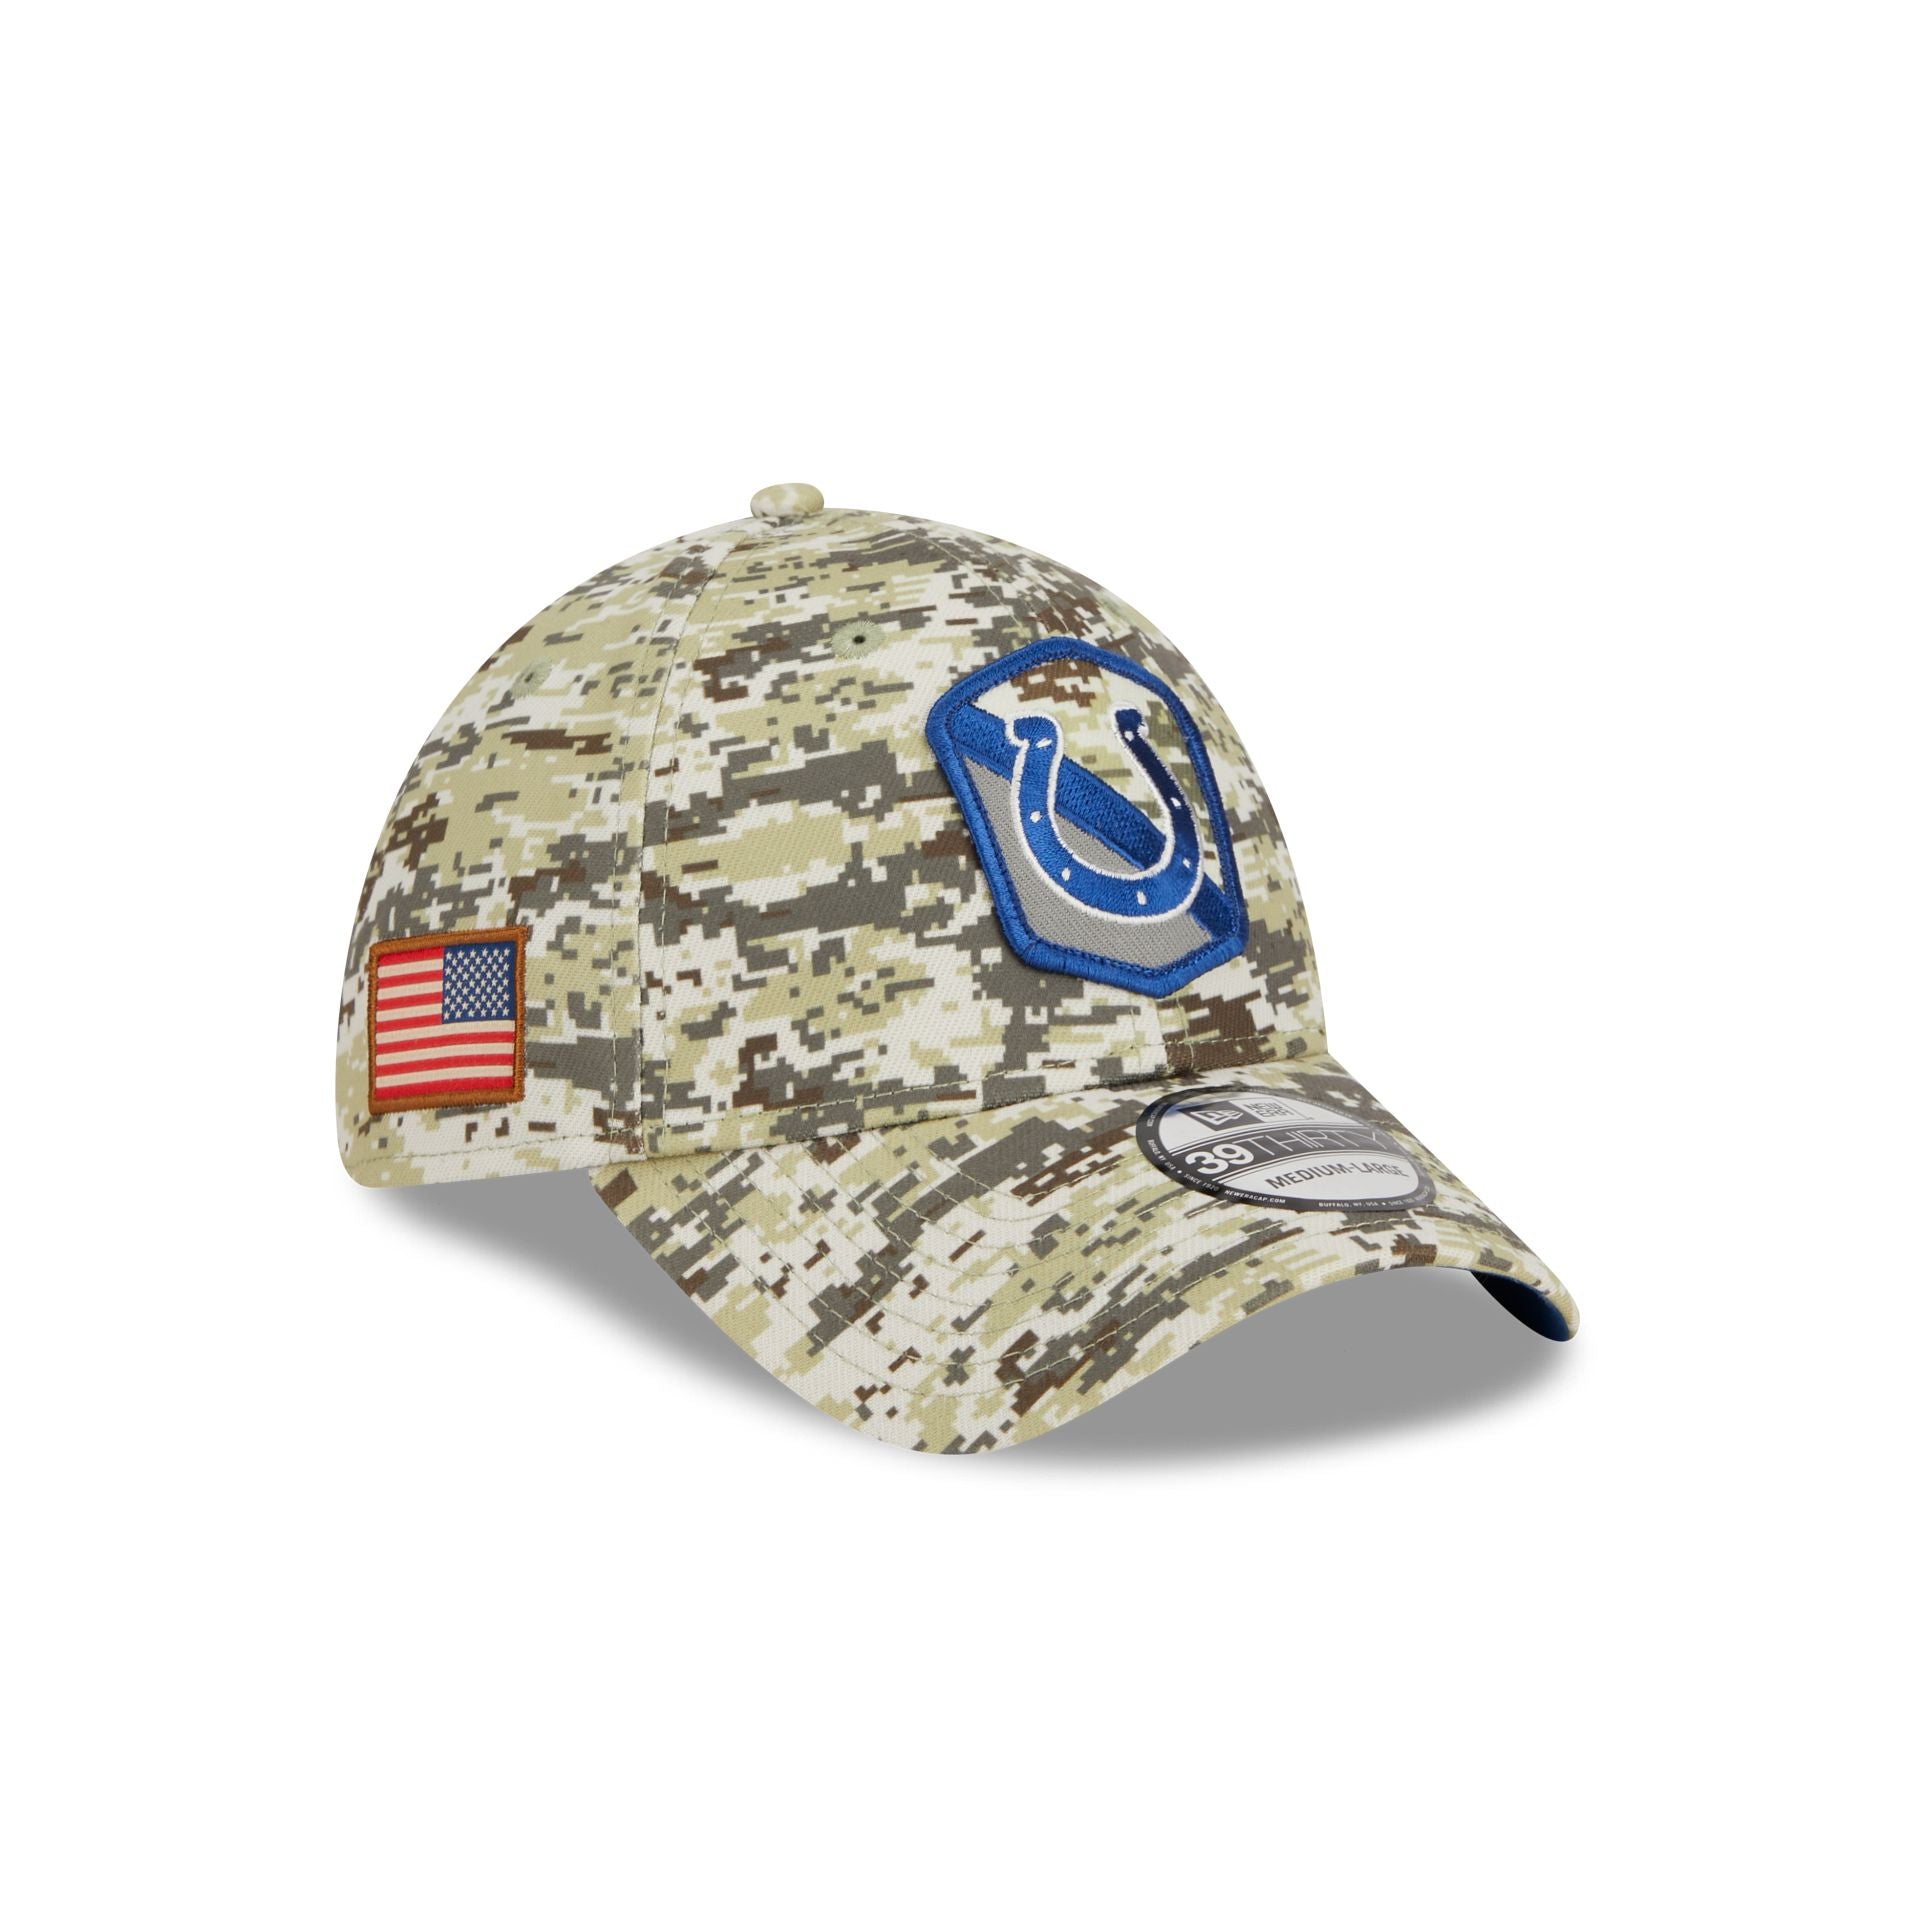 Indianapolis Colts Hats & Caps – New Era Cap